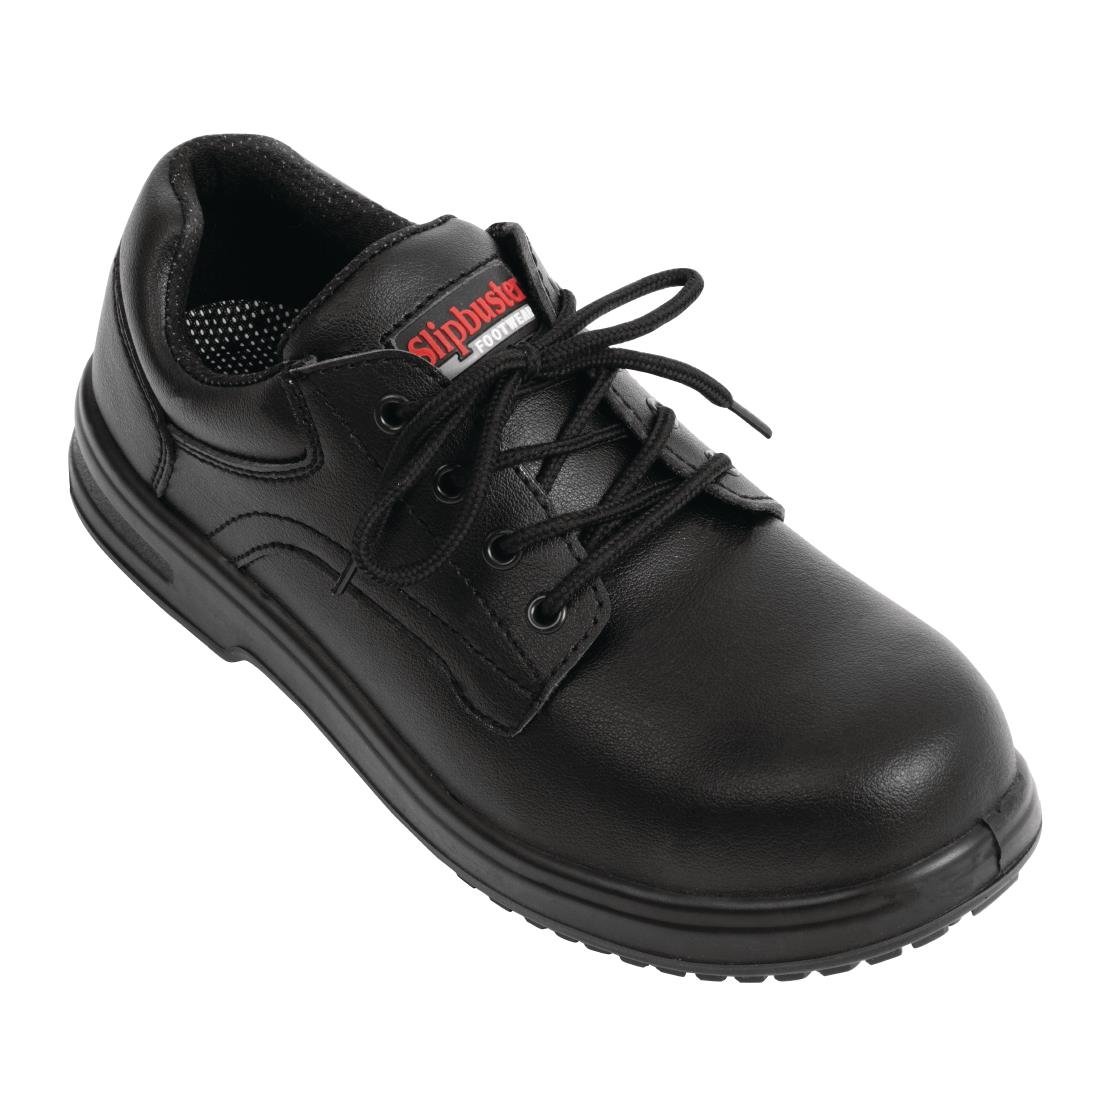 BB498-38 Slipbuster Basic Shoes Slip Resistant Black 38 JD Catering Equipment Solutions Ltd